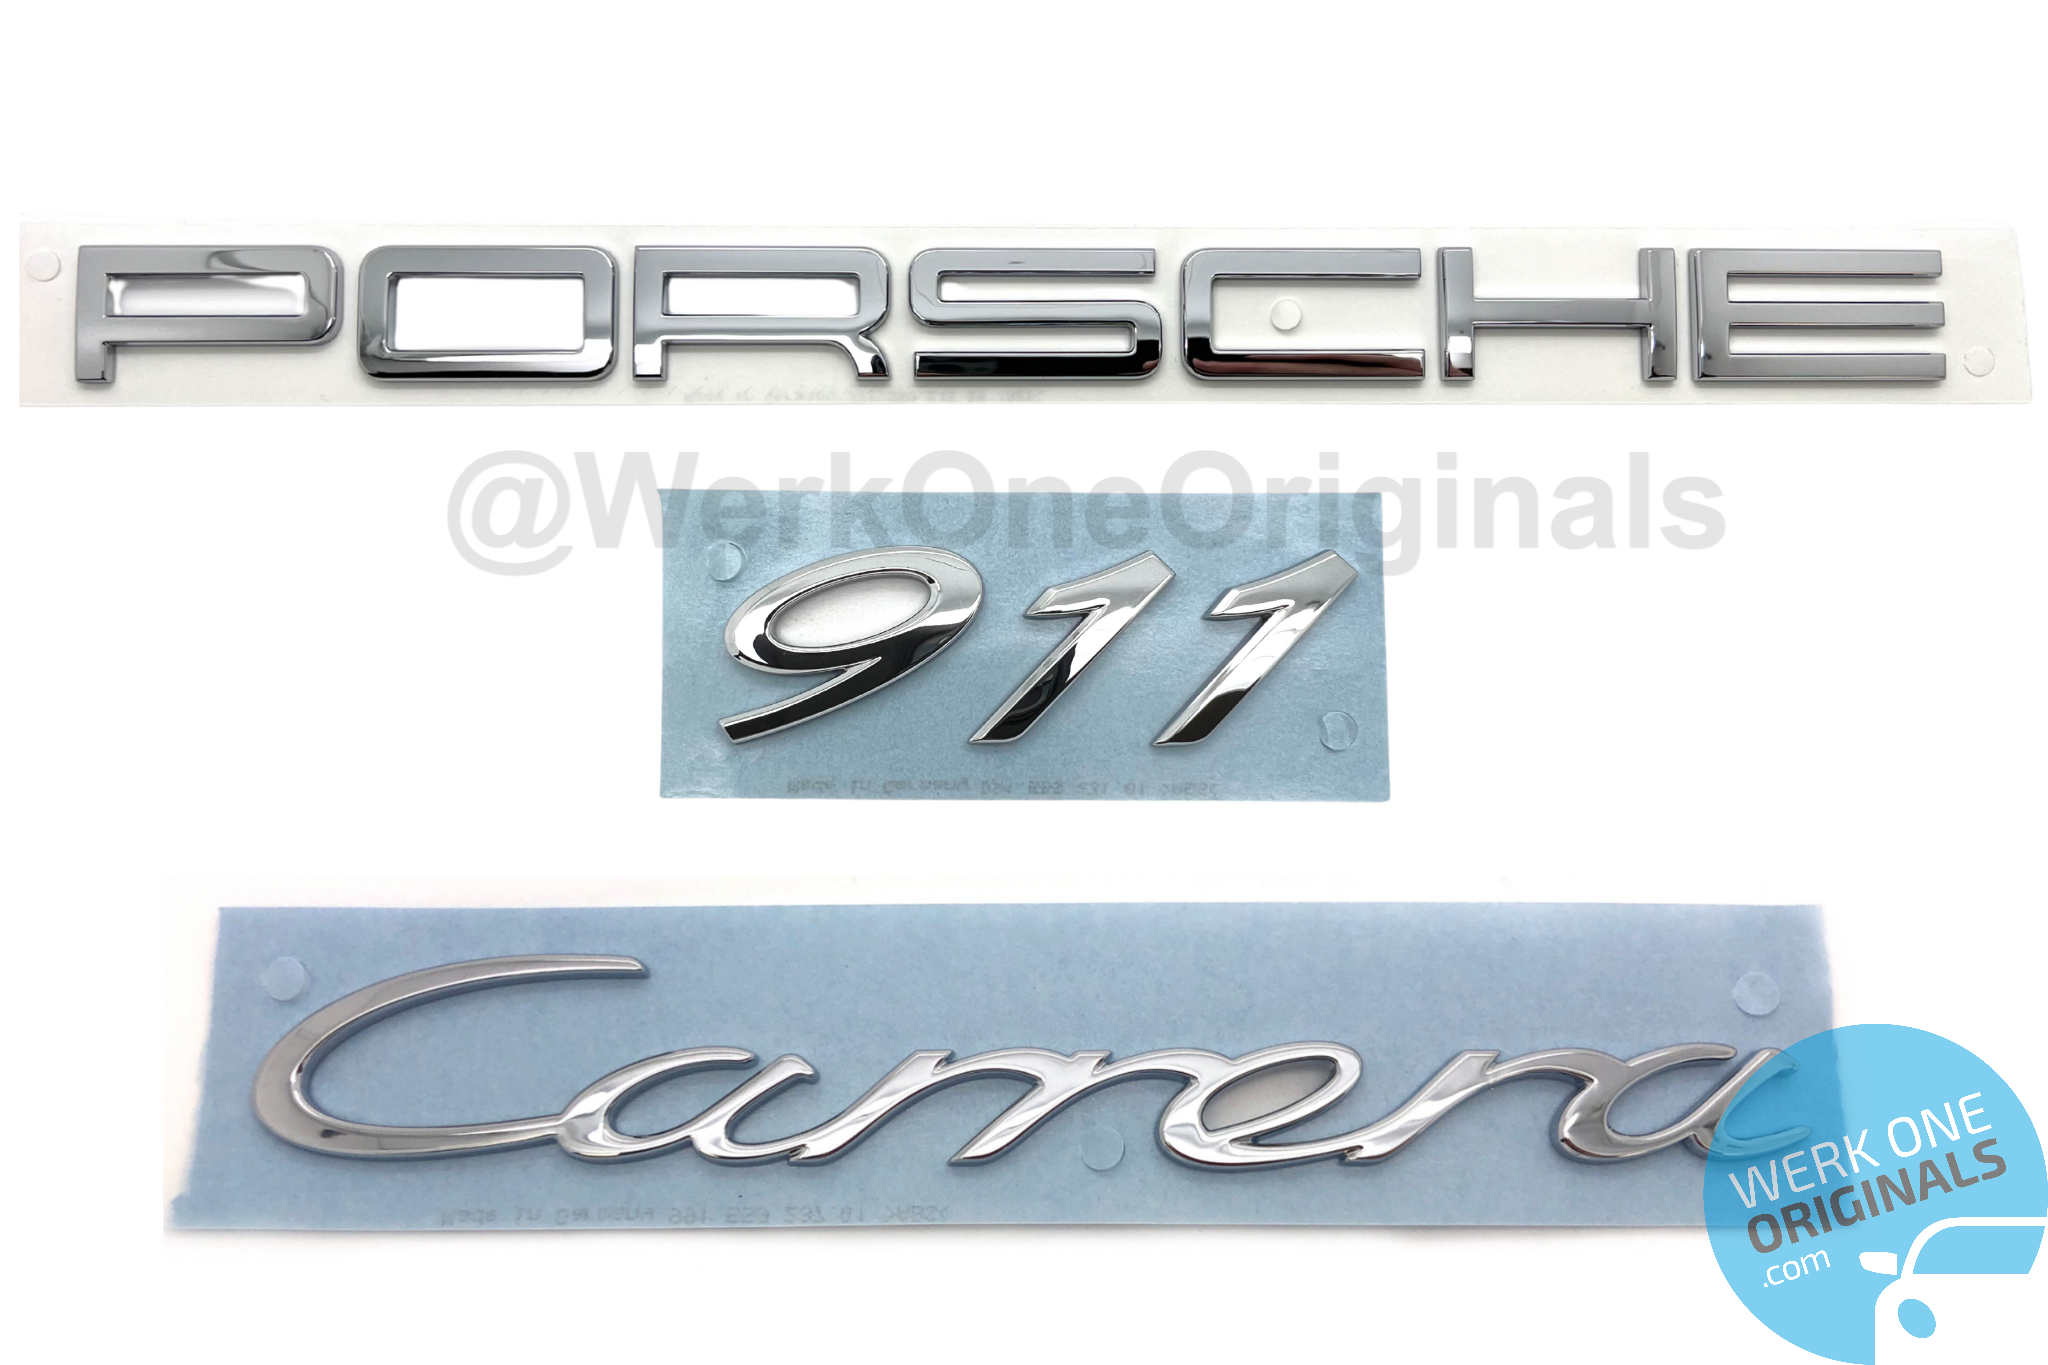 Porsche Official 'Porsche 911 Carrera' Rear Badge Decal in Chrome Silver for 911 Type 991 Carrera Models